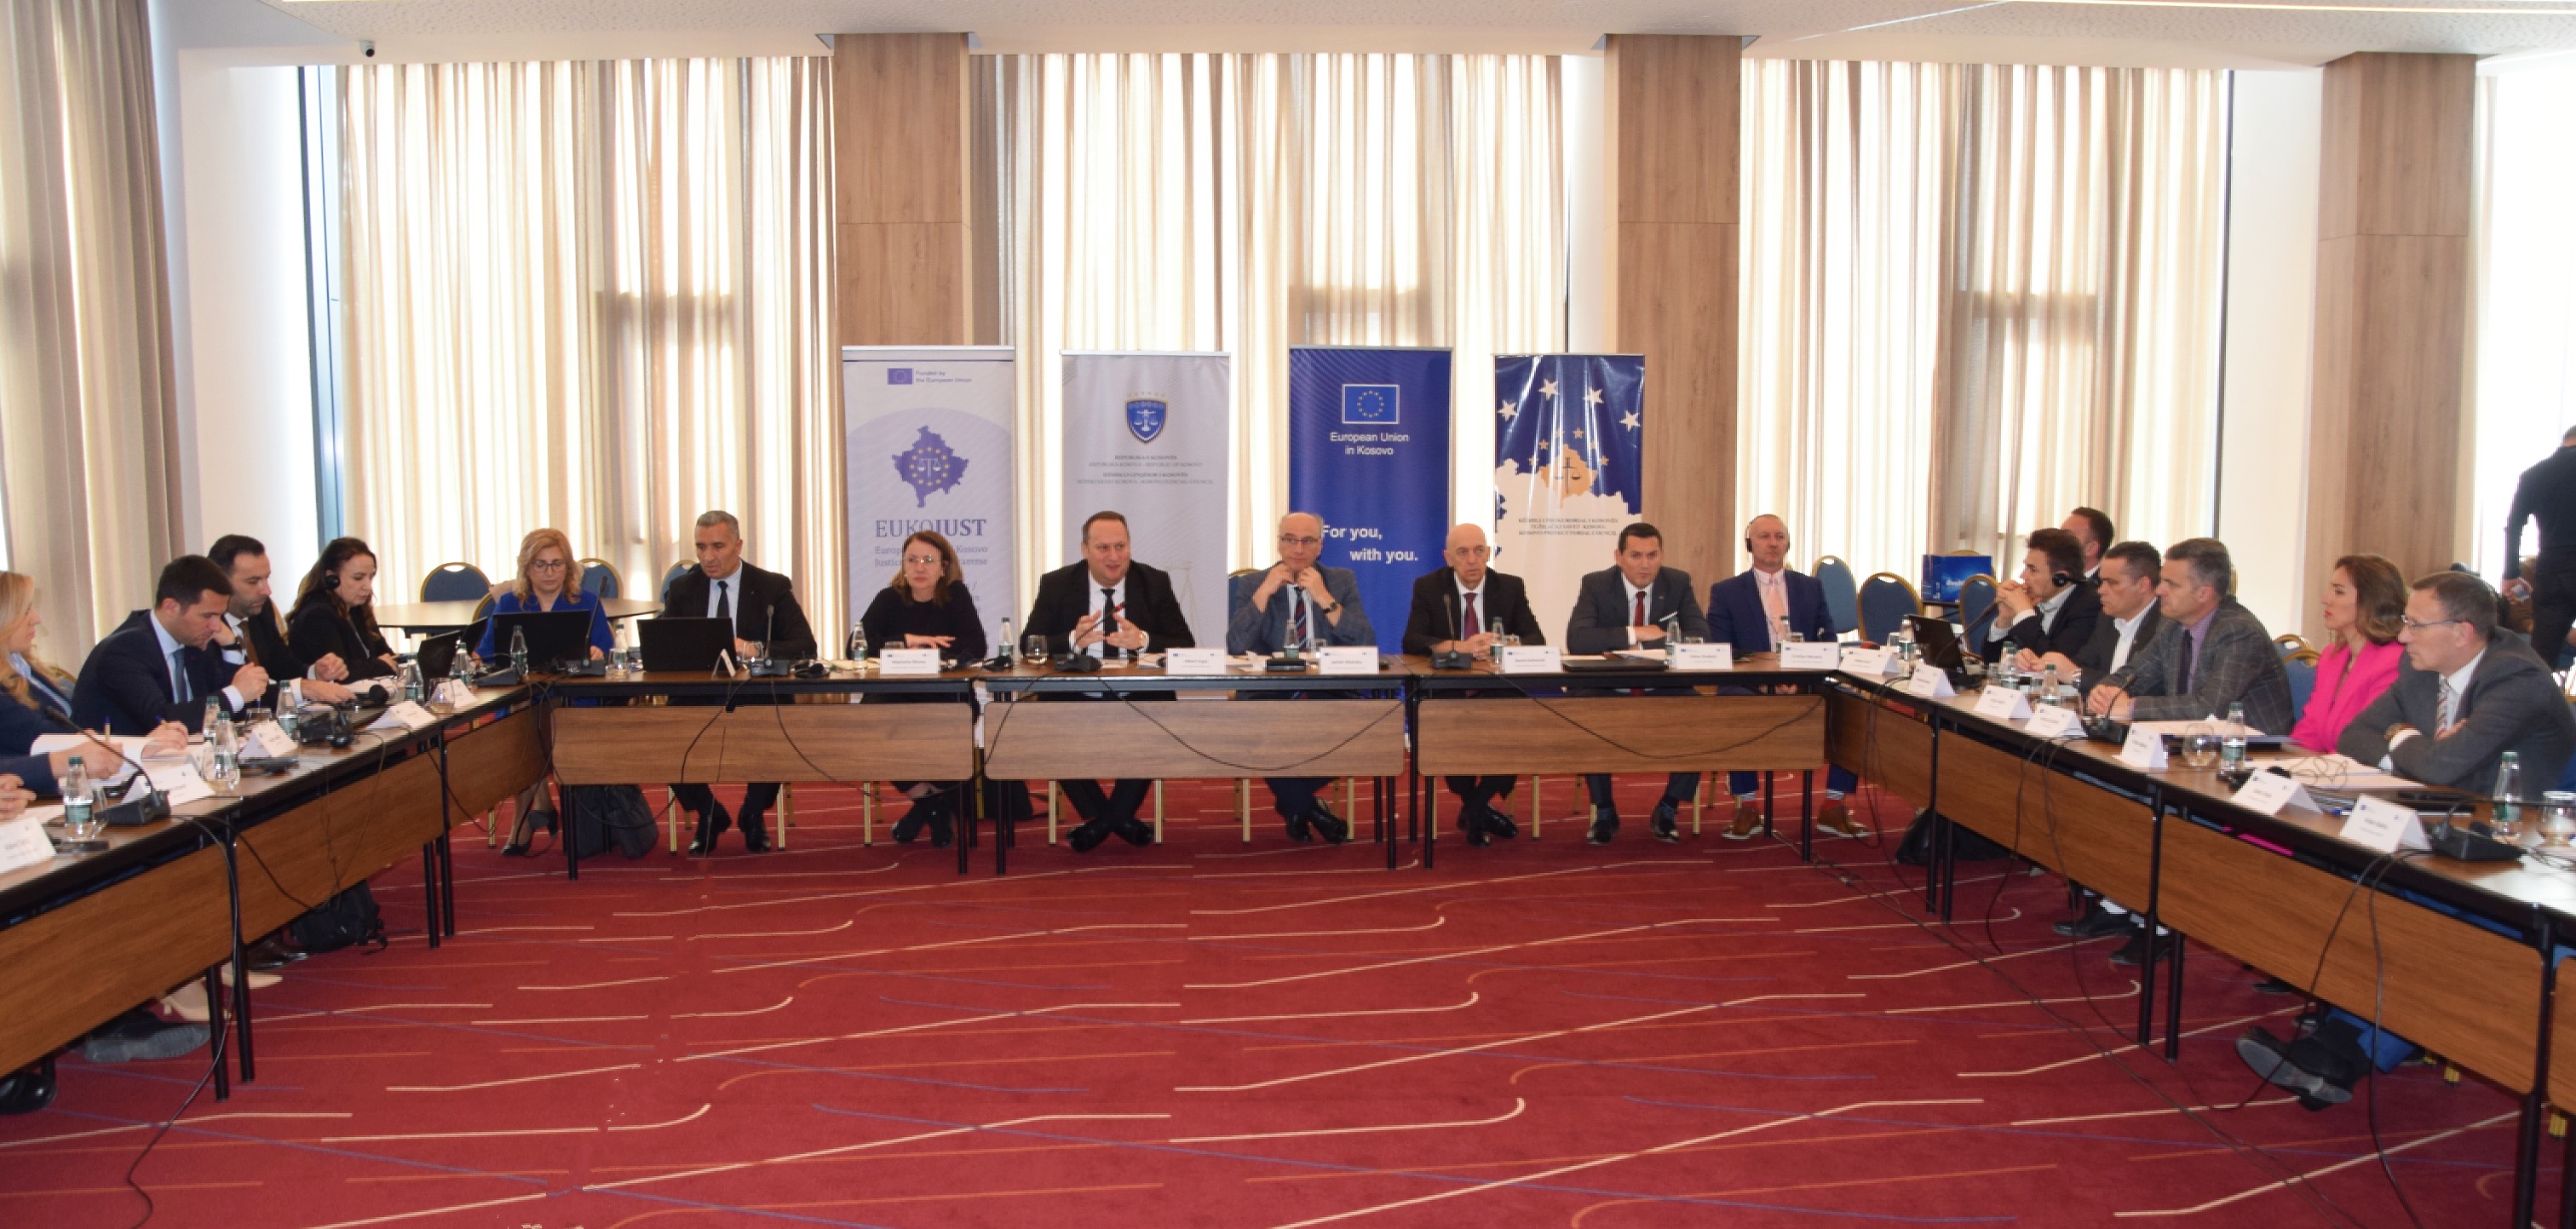 Održana je zajednička radionica između Sudskog saveta Kosova i Tužilačkog saveta Kosova